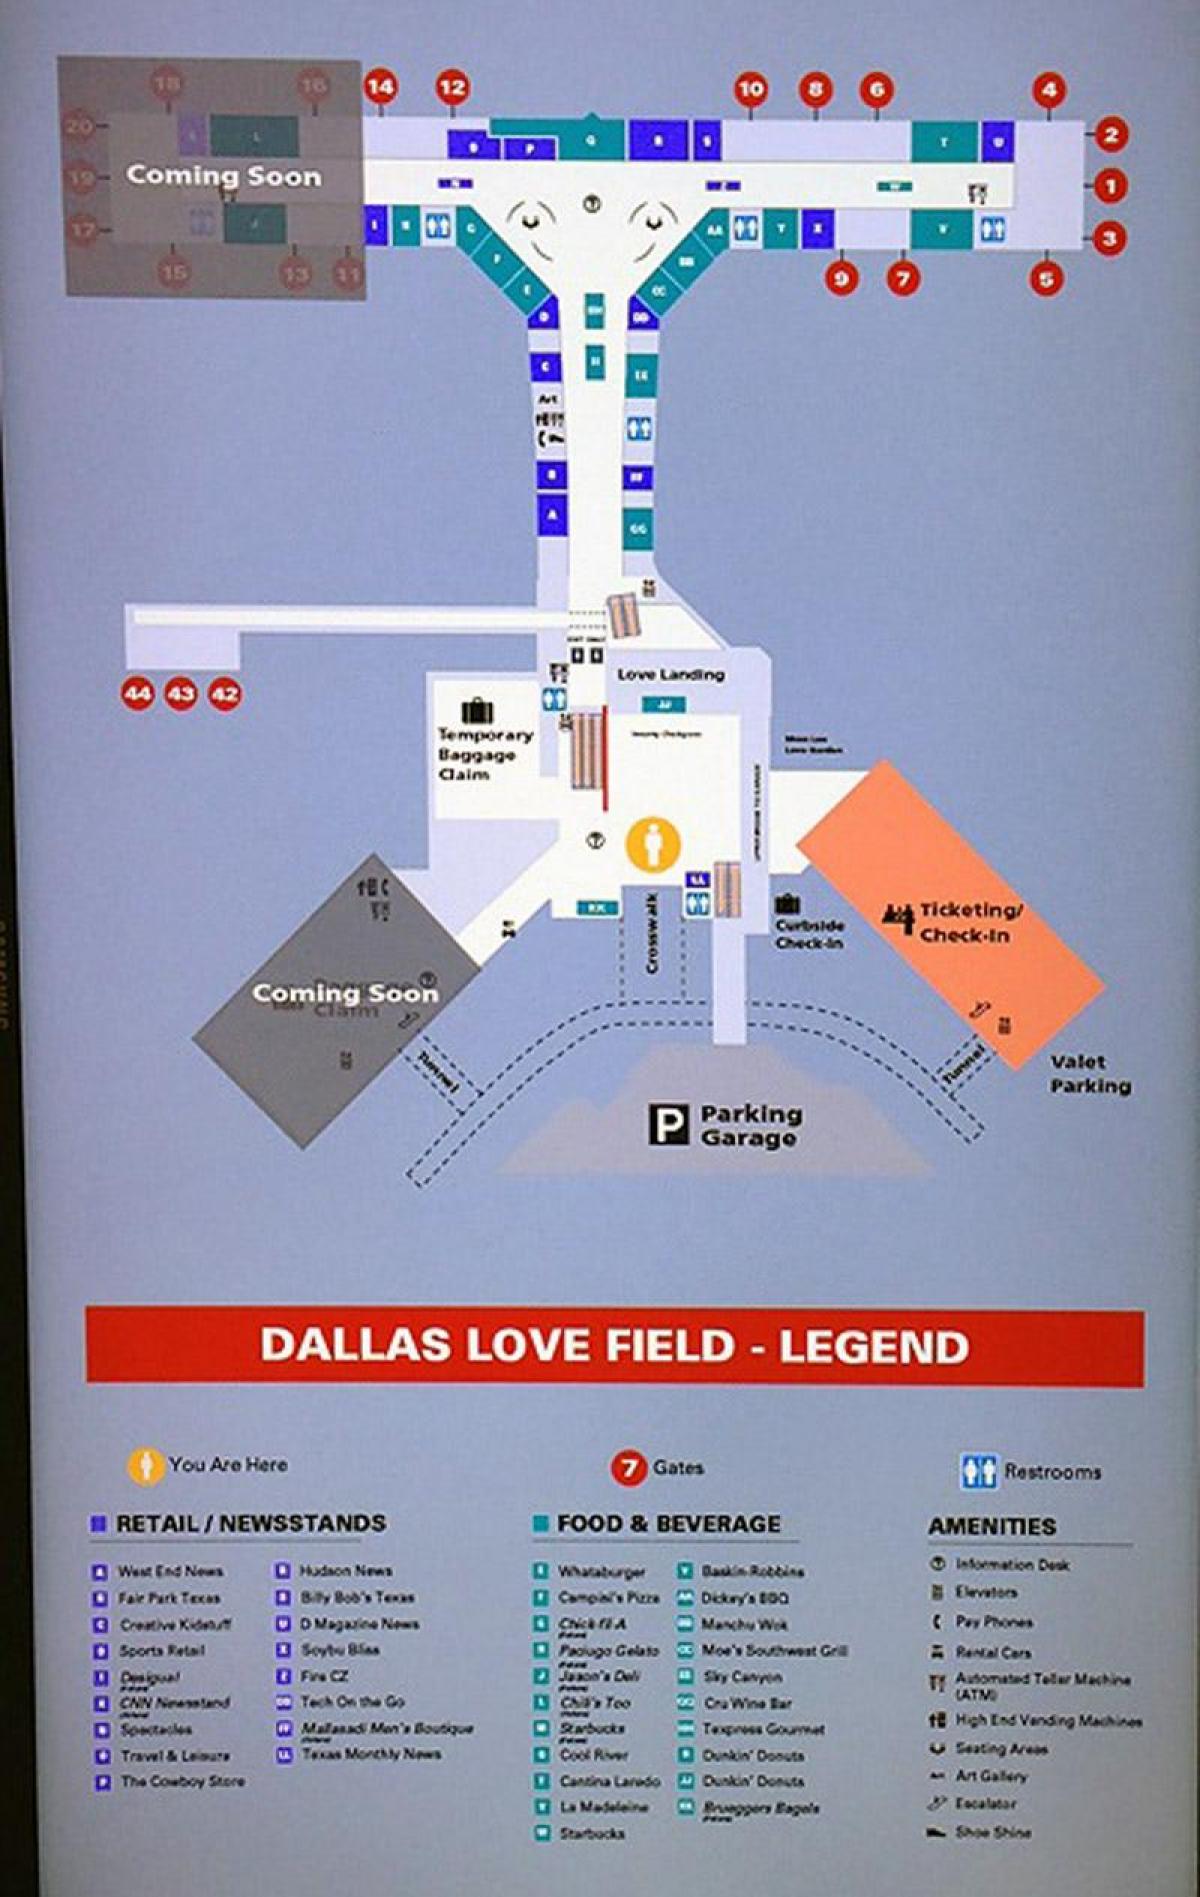 Der Flughafen Dallas love field anzeigen